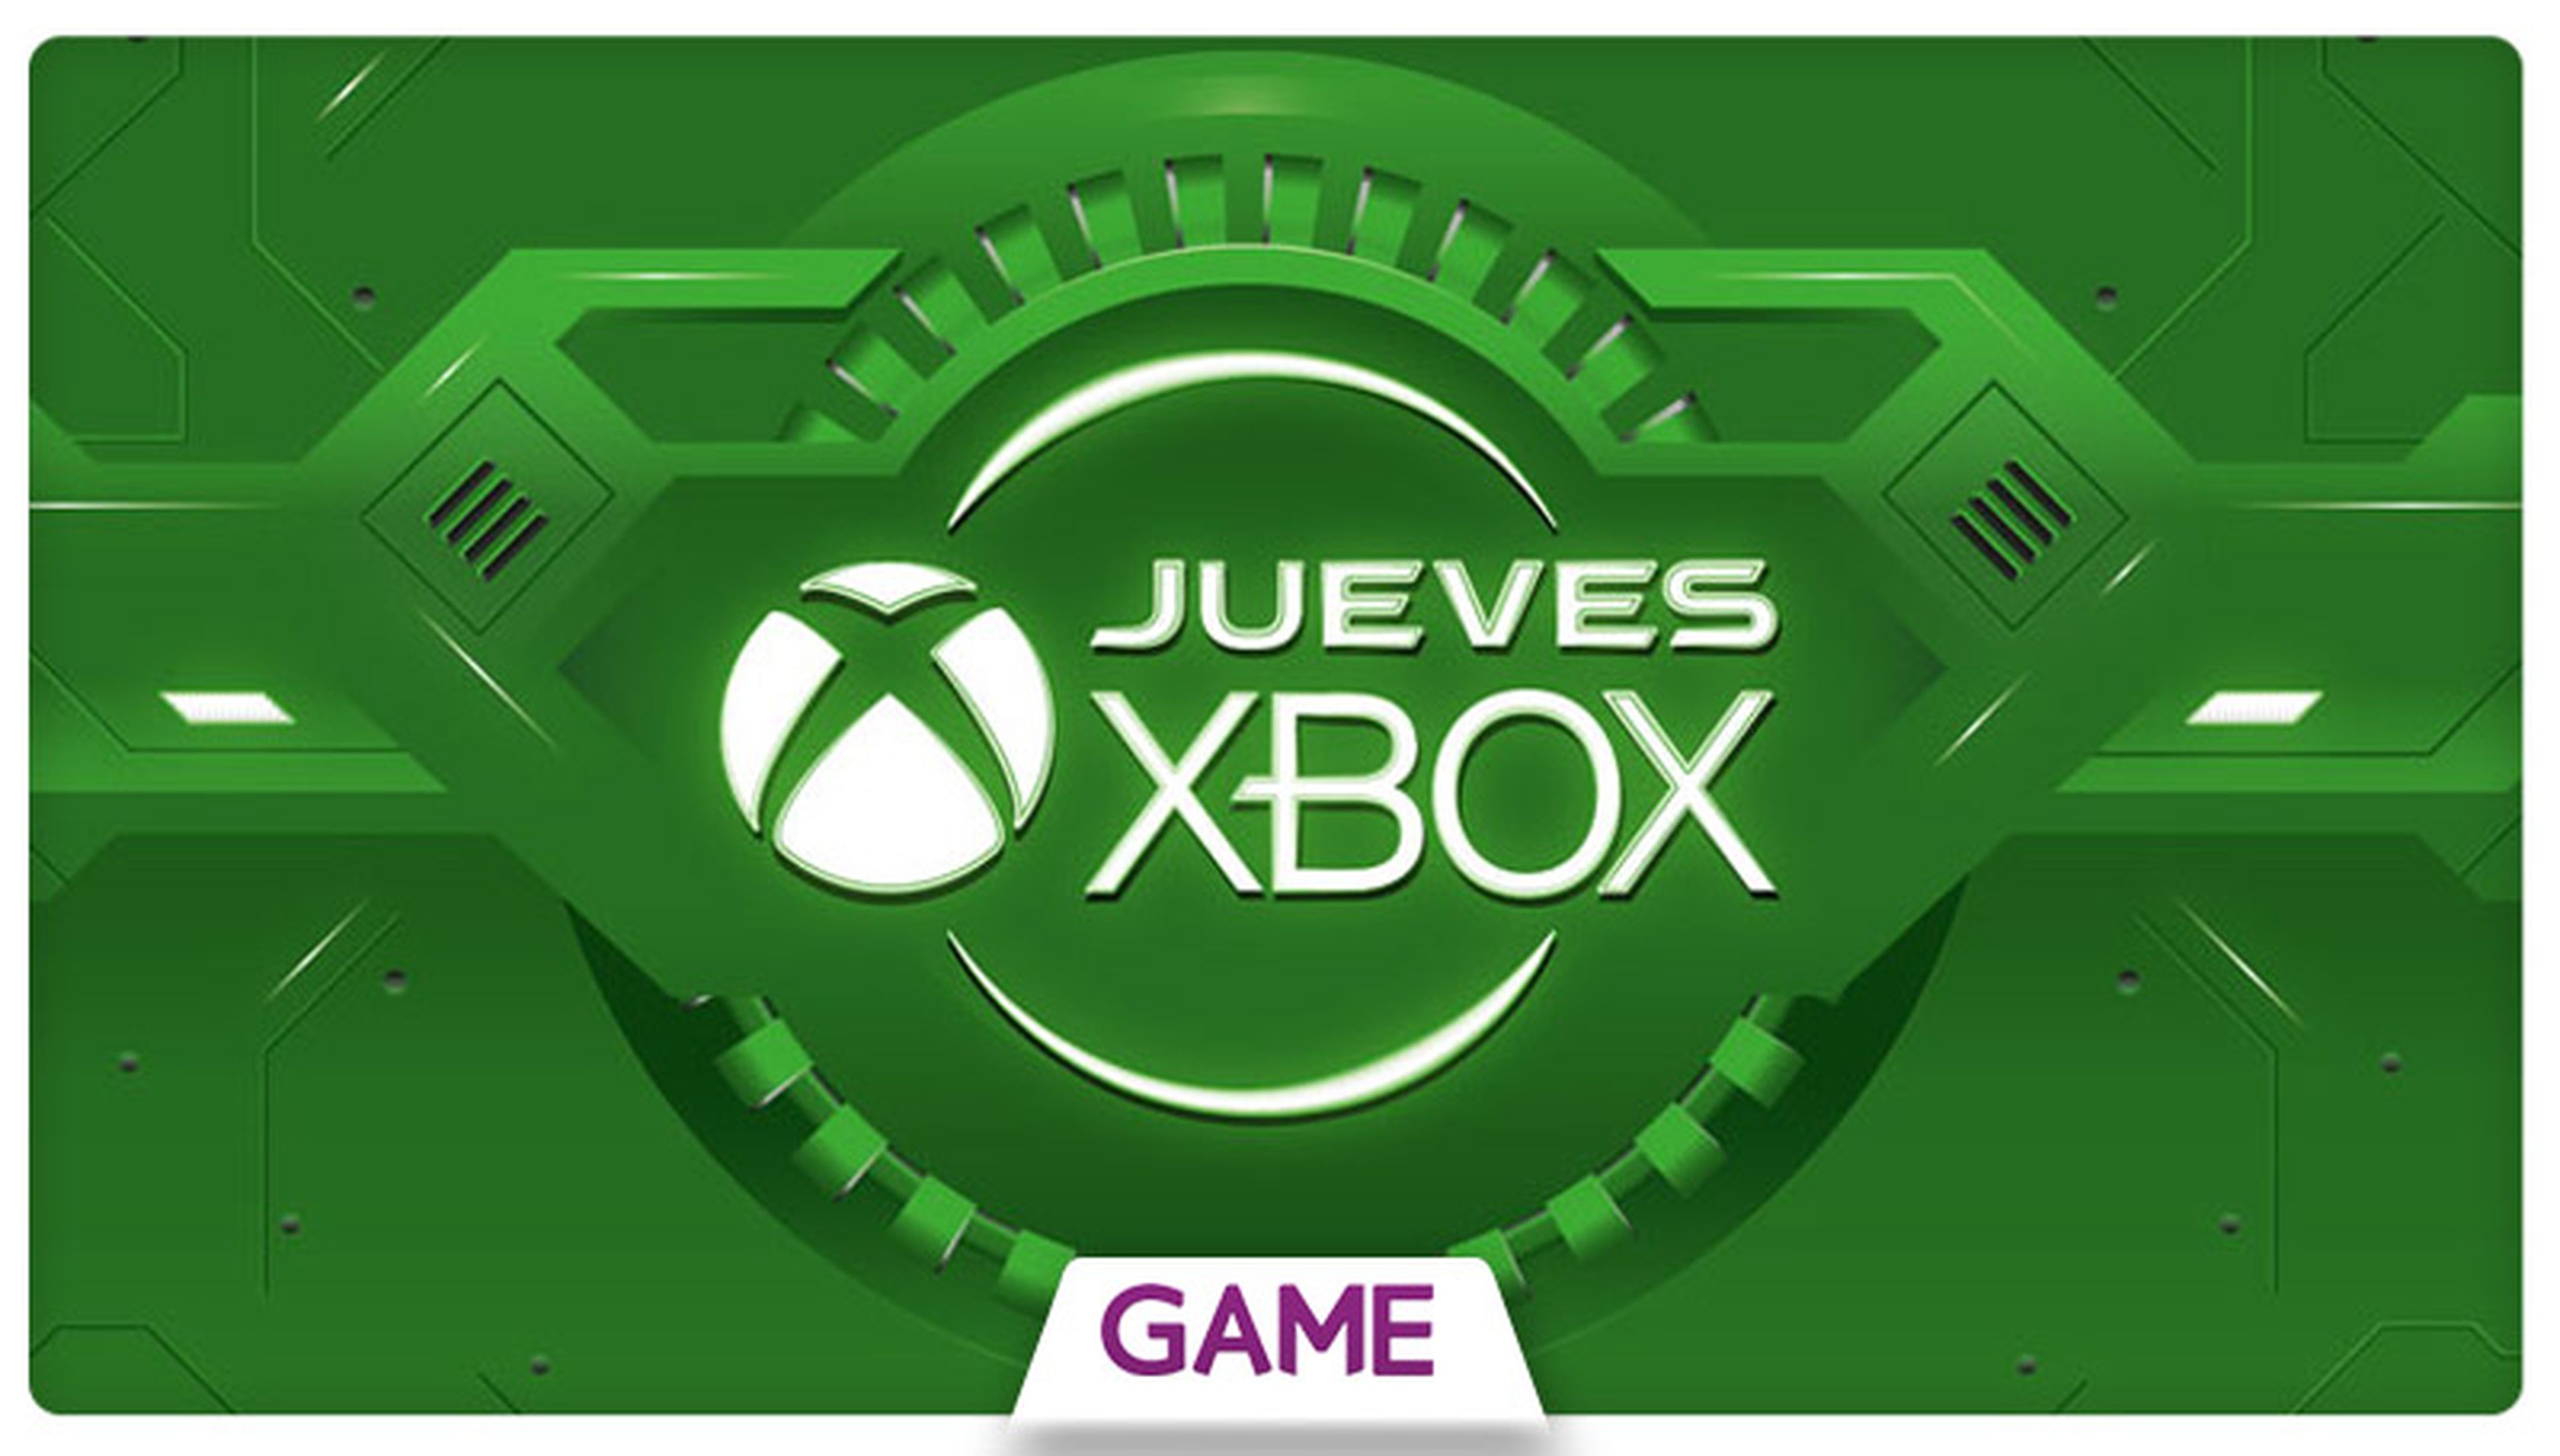 Jueves Xbox en GAME: Ofertas del 20/08/2015